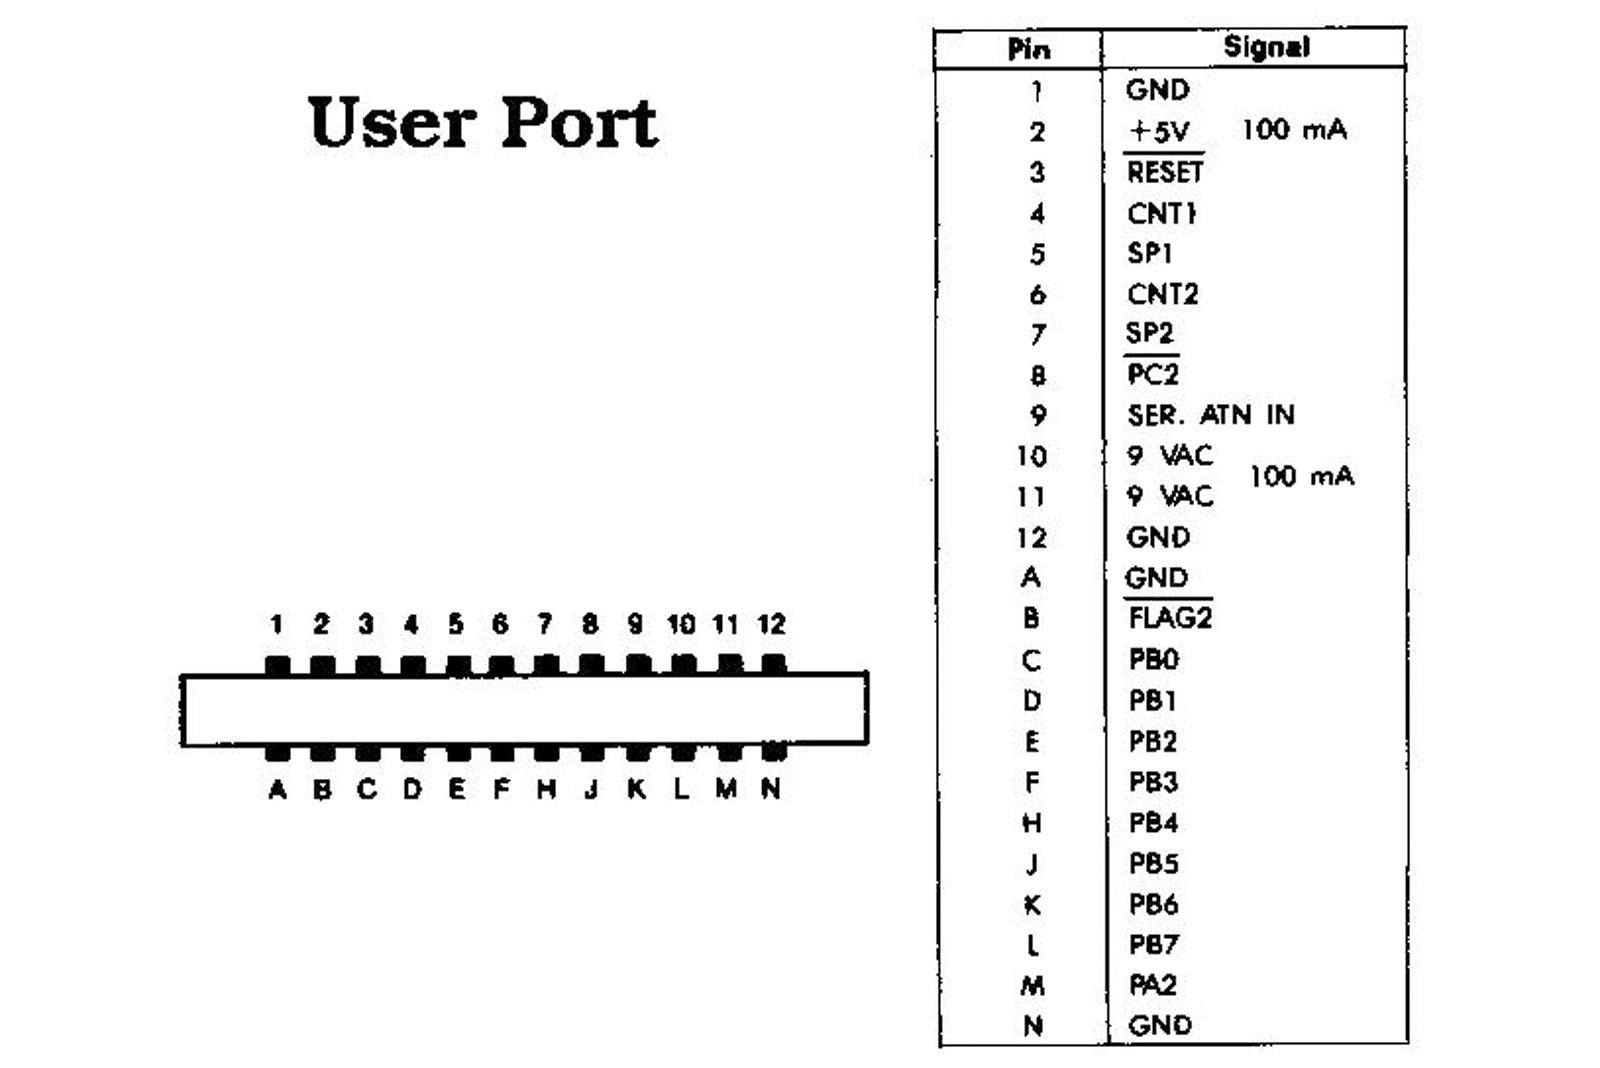 User port